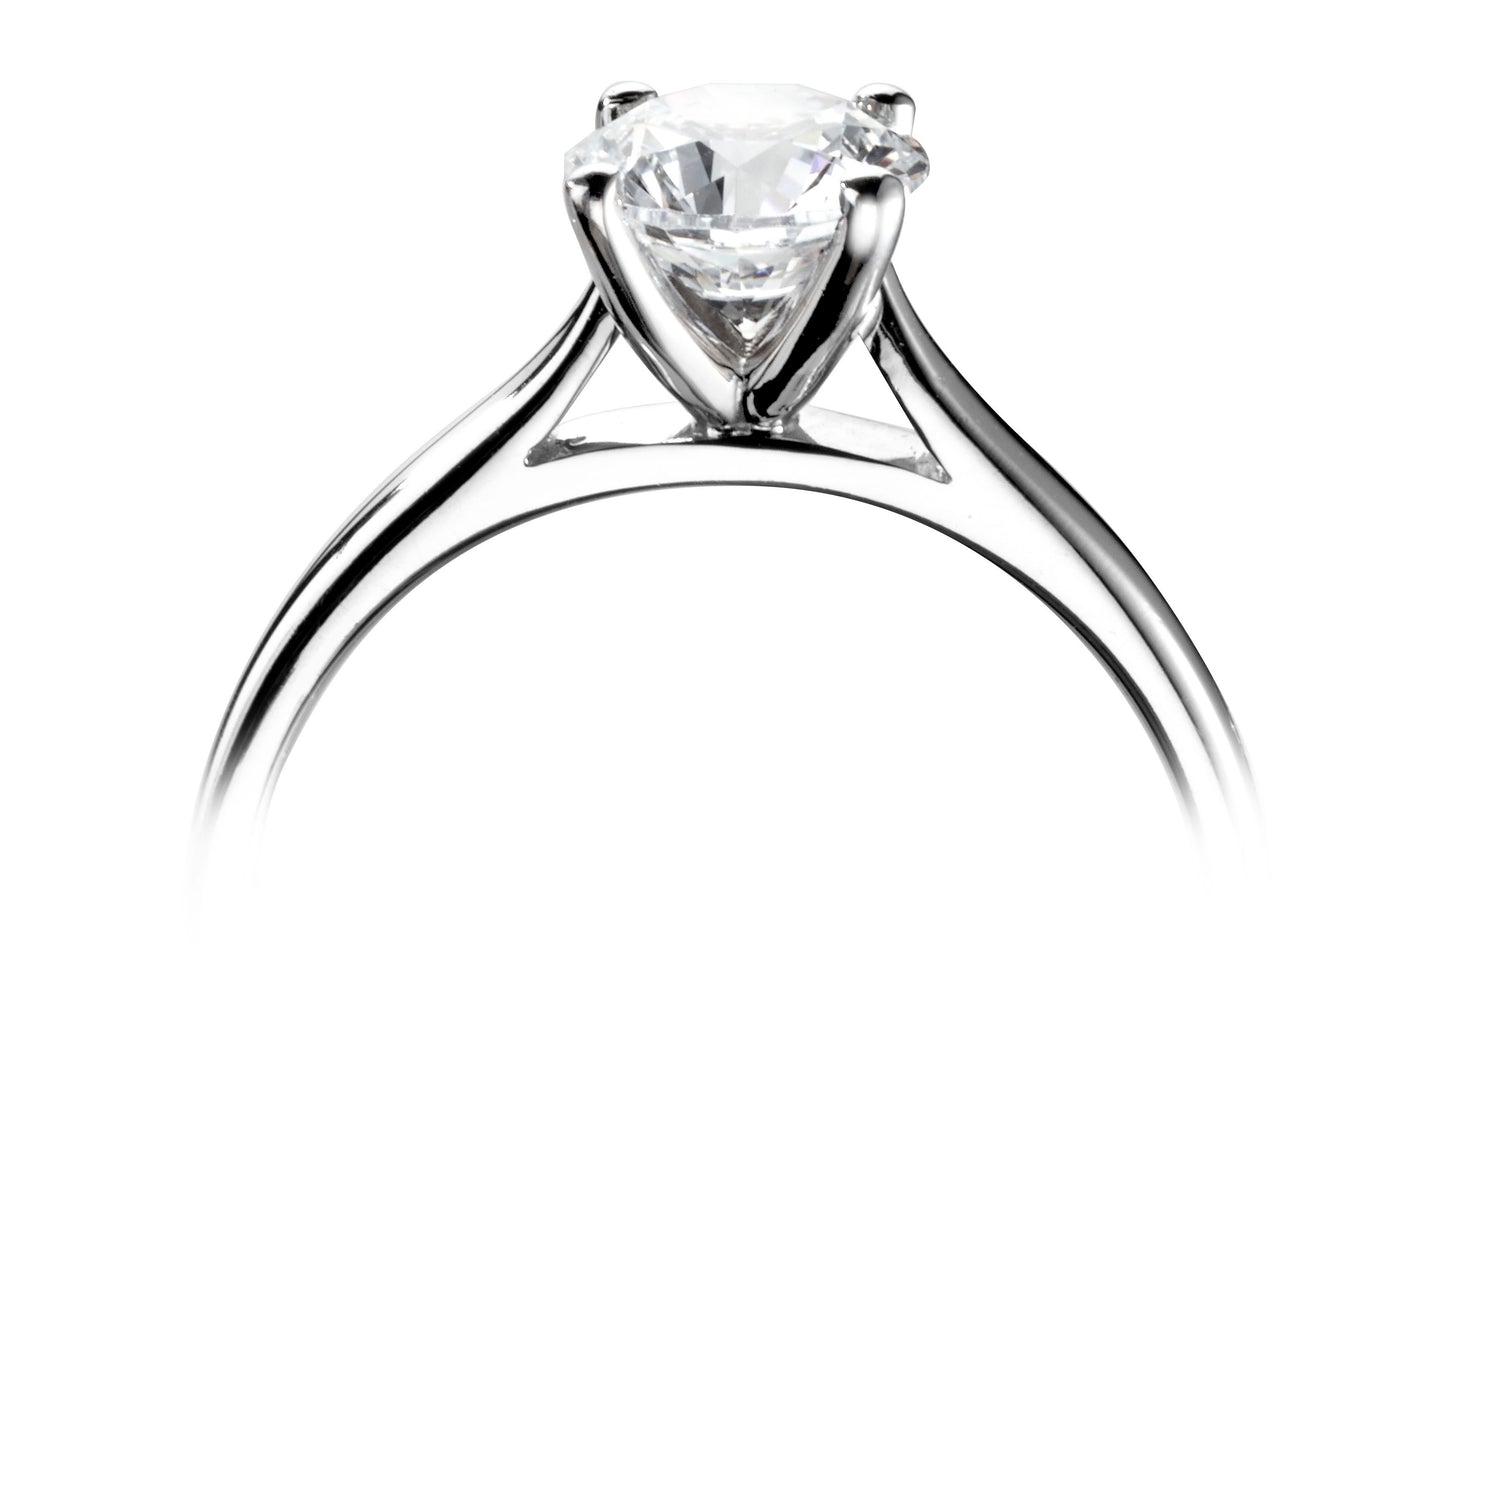 18CT White Gold Round Diamond Solitaire Ring - Robert Anthony Jewellers, Edinburgh